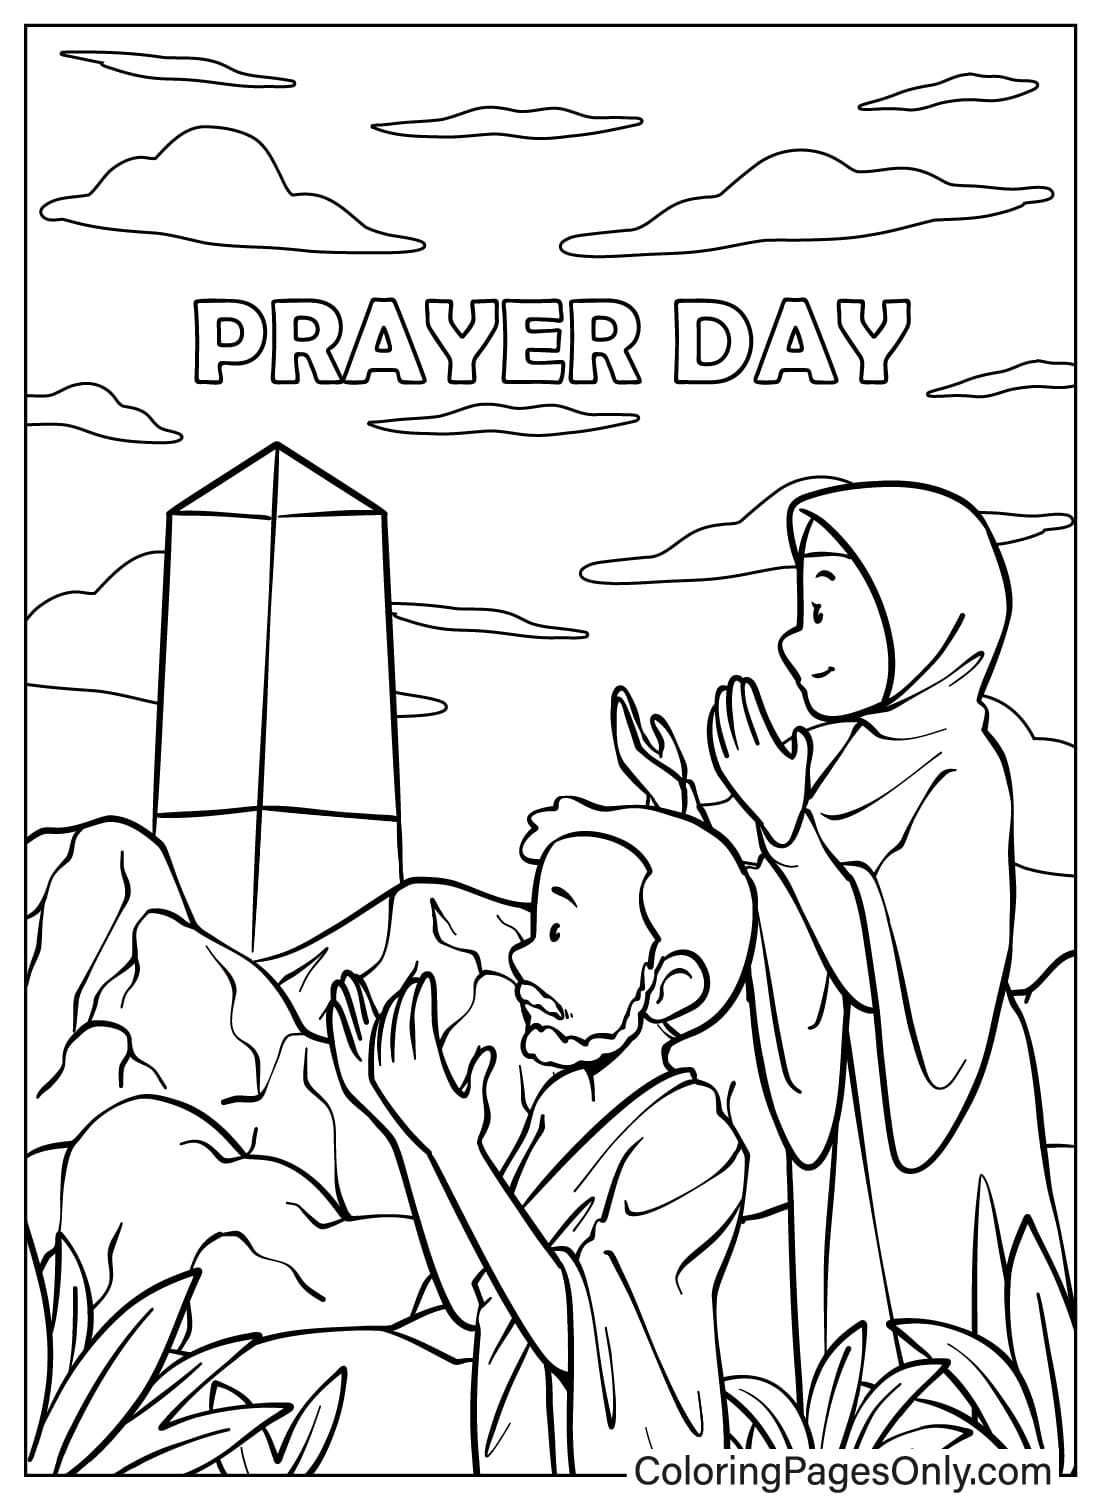 Homme et femme priant le jour de la prière